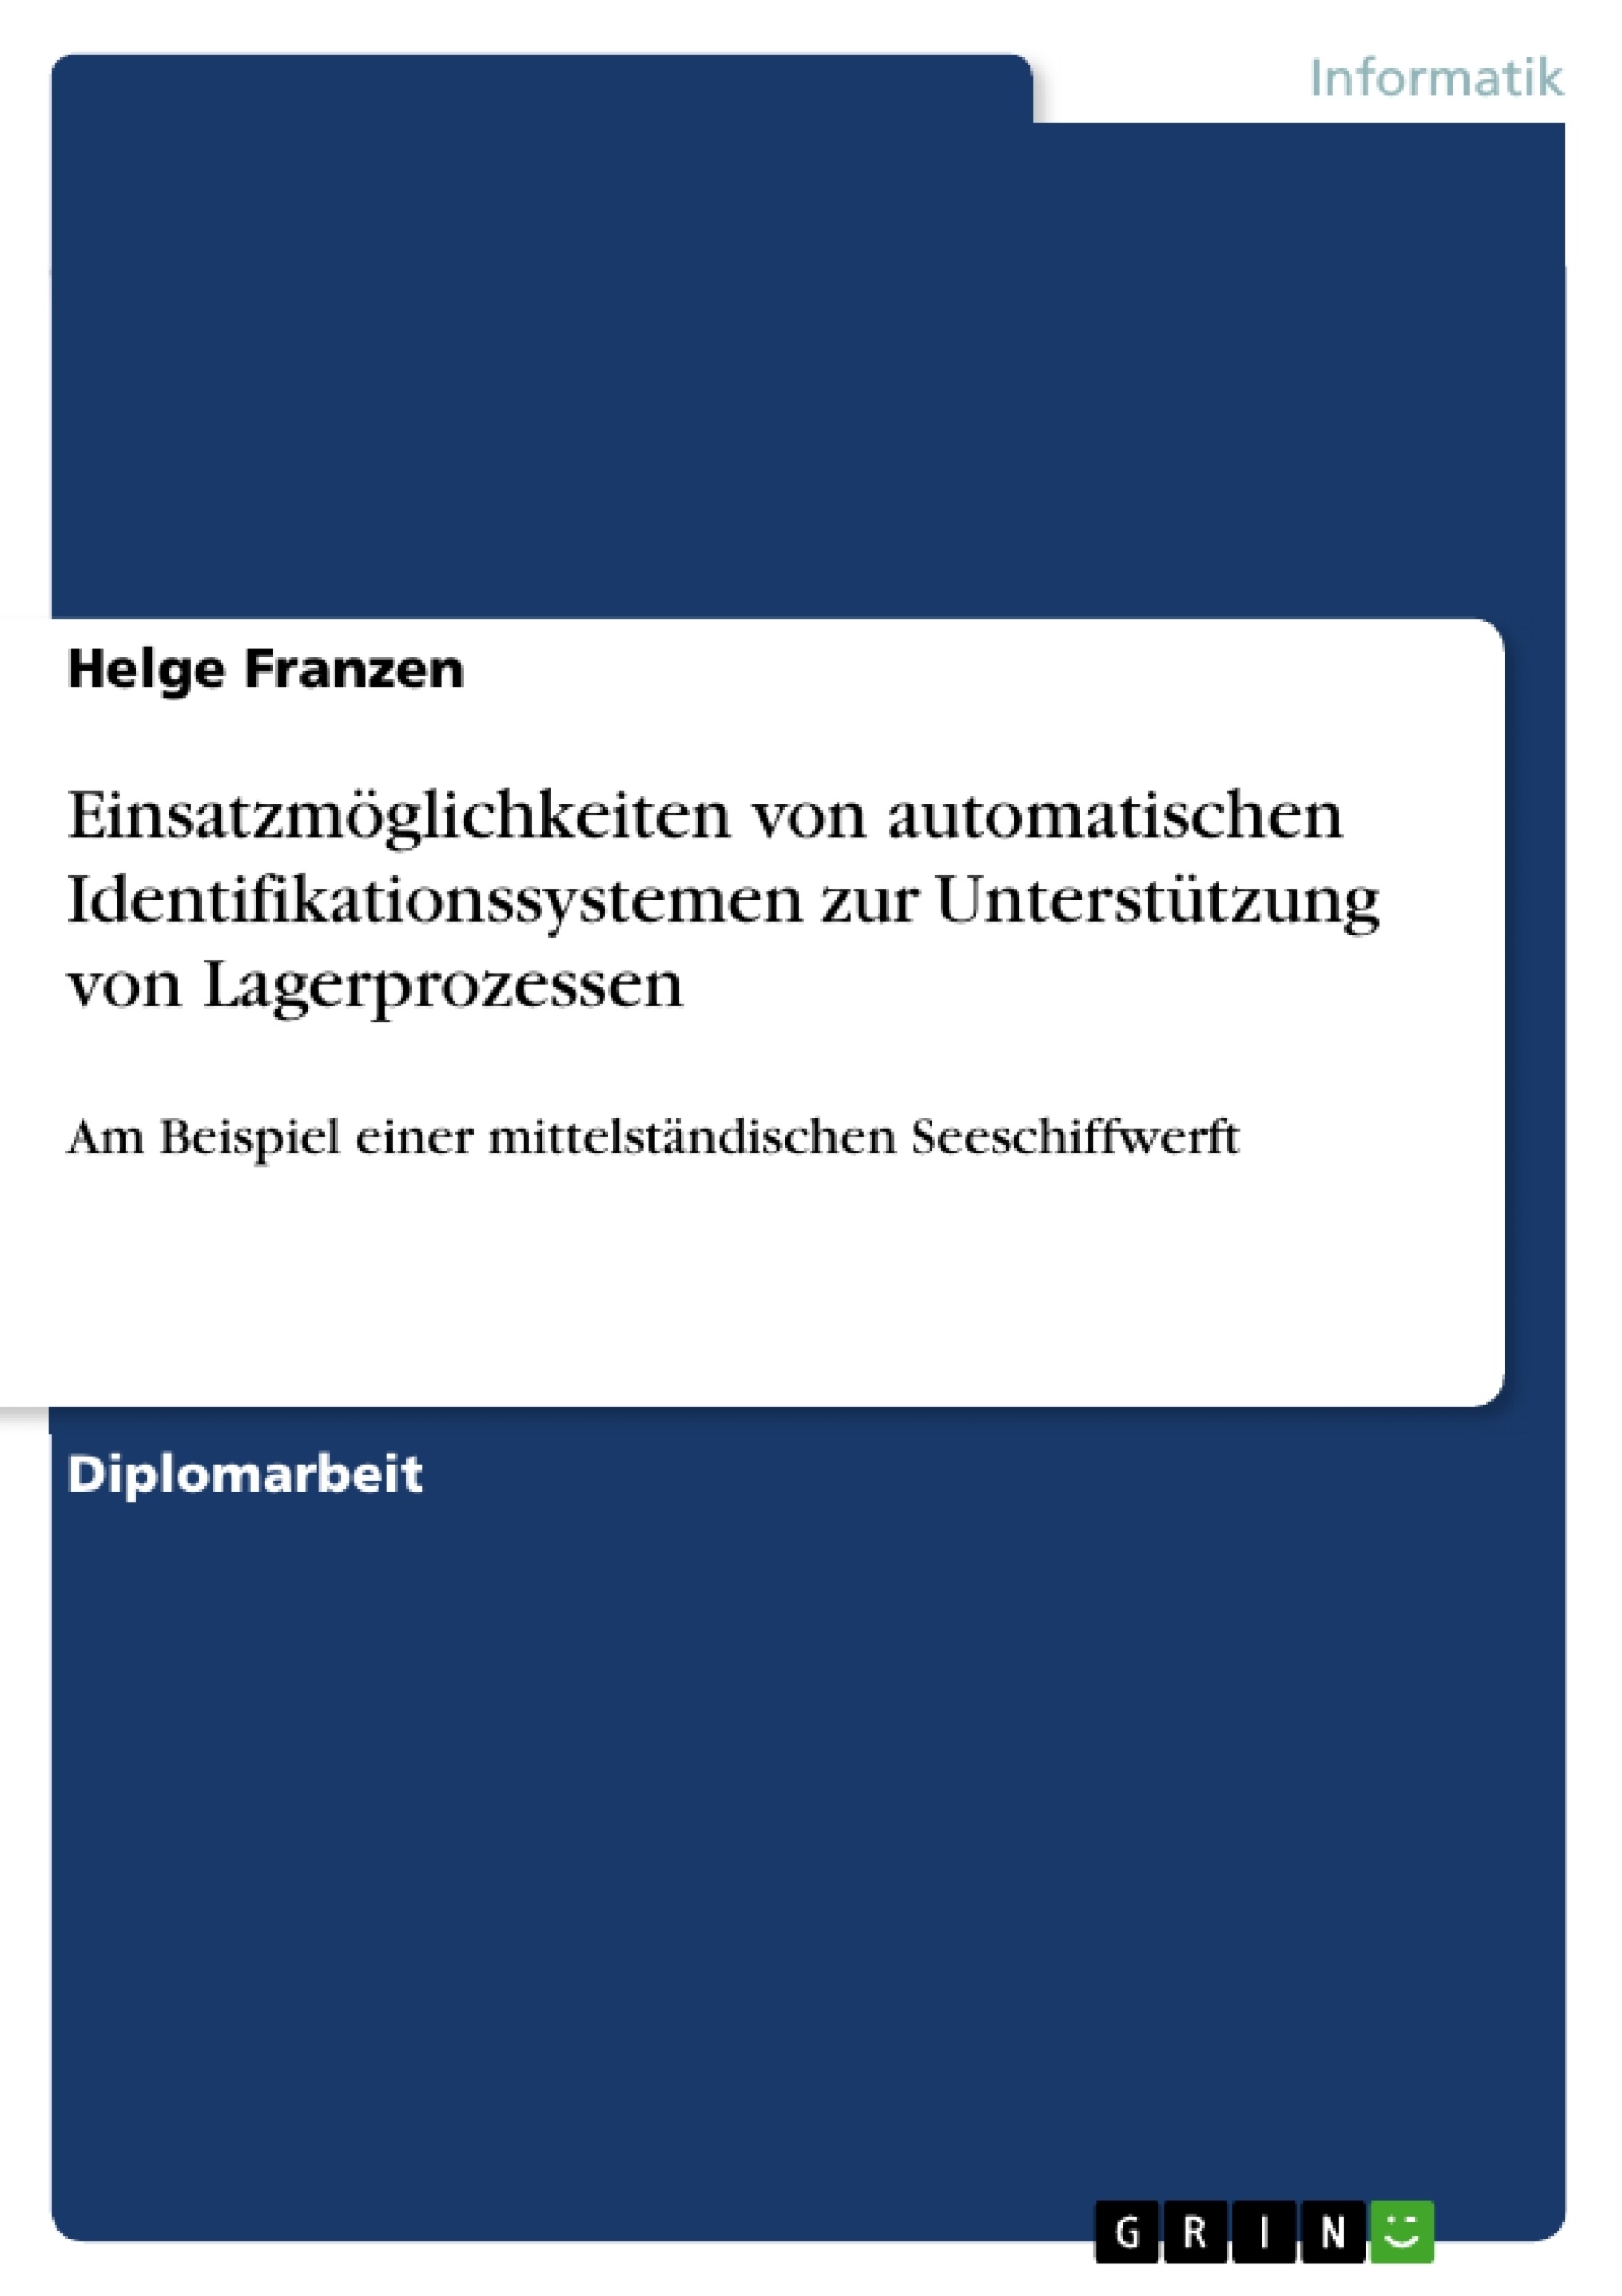 Title: Einsatzmöglichkeiten von automatischen Identifikationssystemen zur Unterstützung von Lagerprozessen